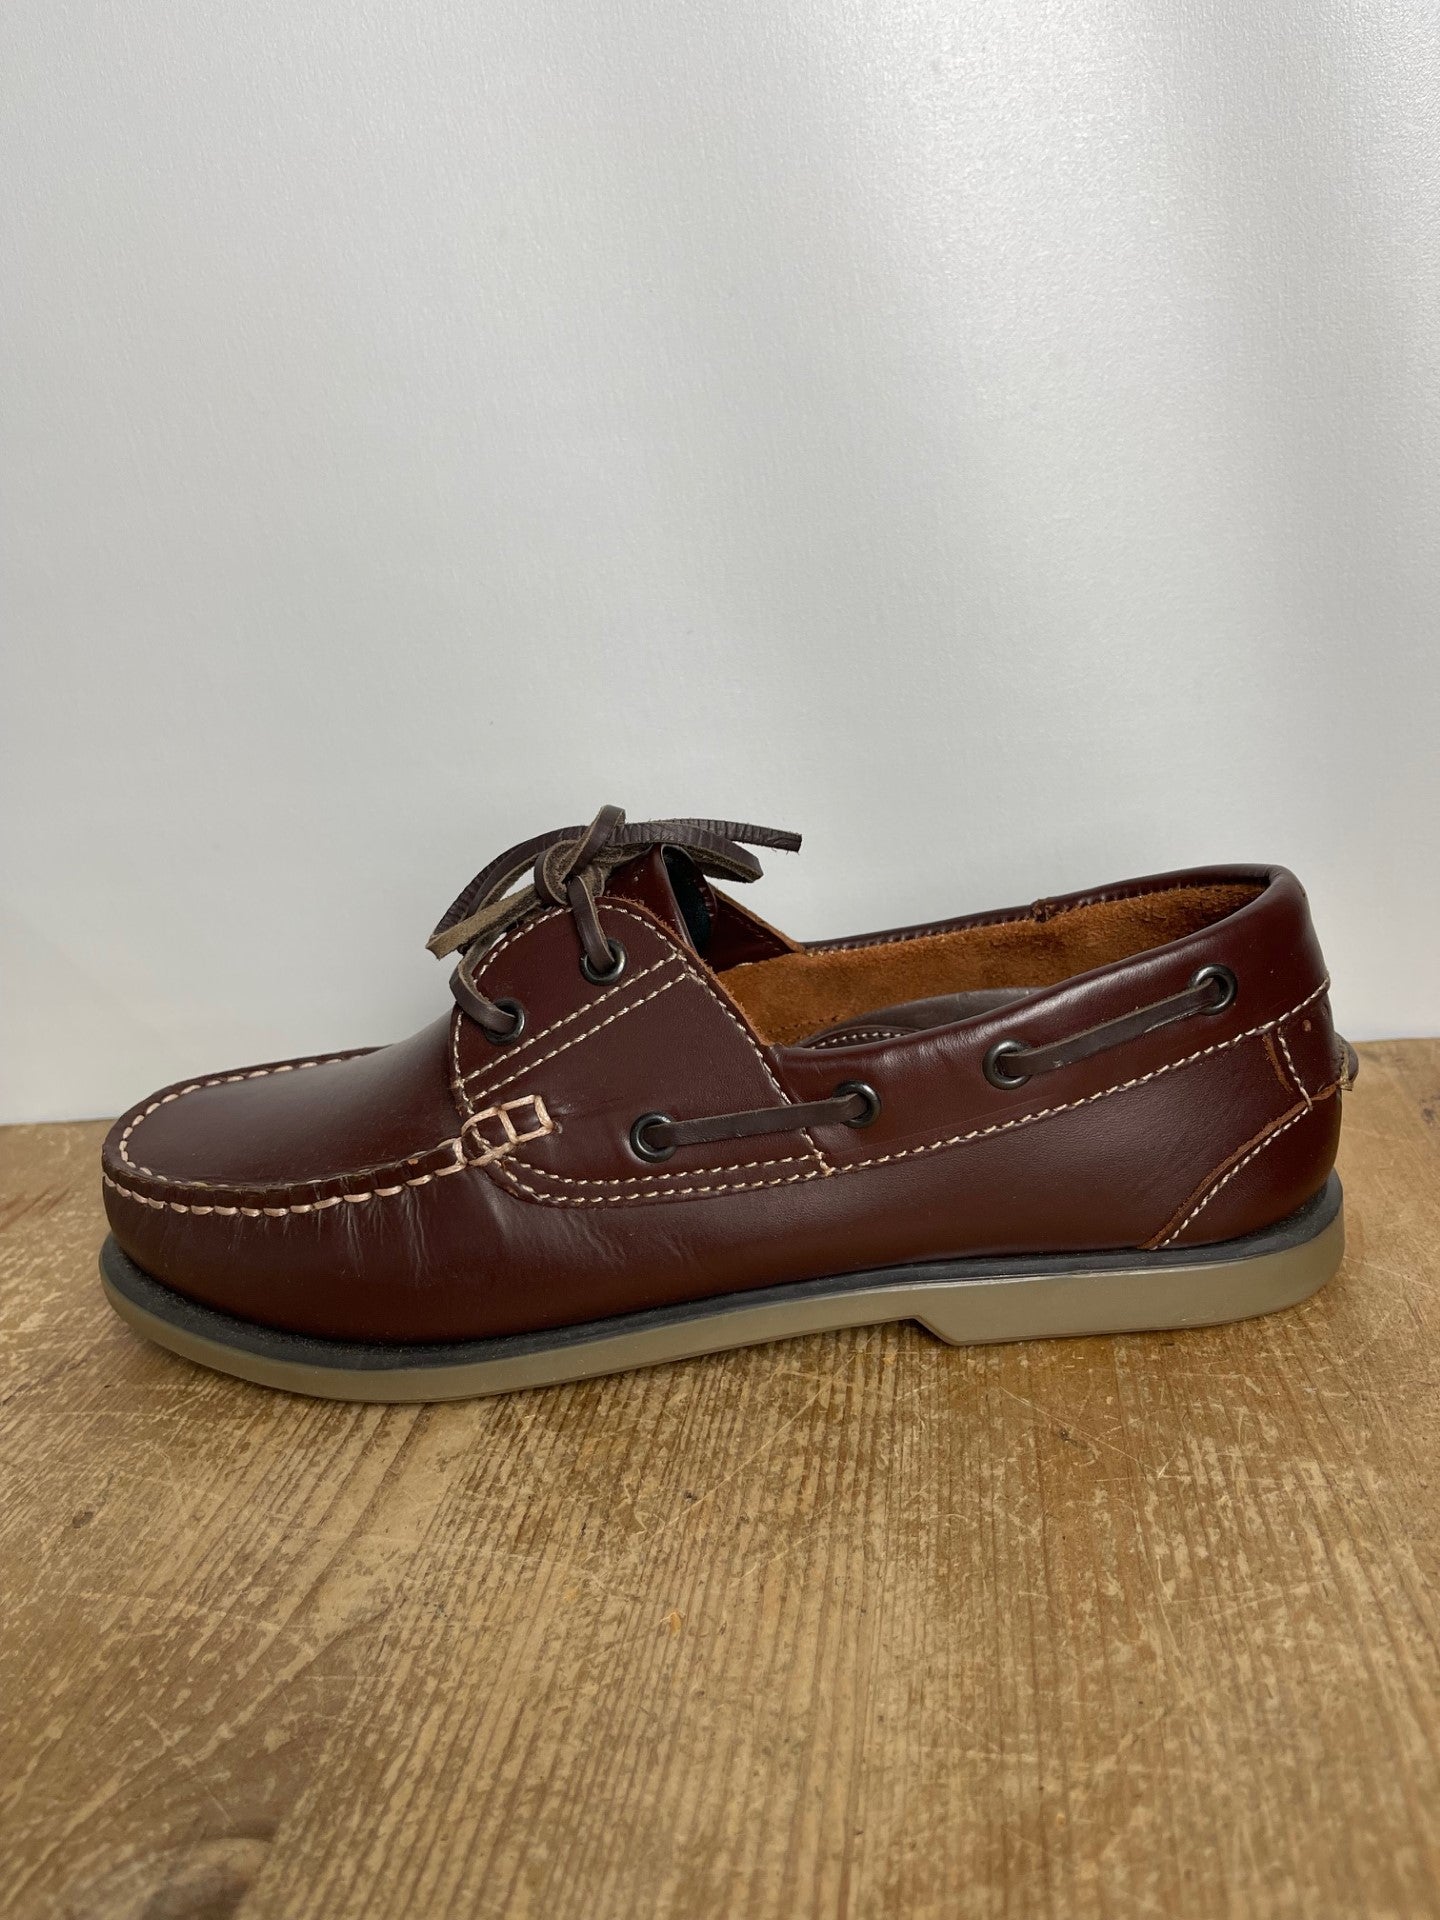 BNWT Dek Brown Shoes Size 8